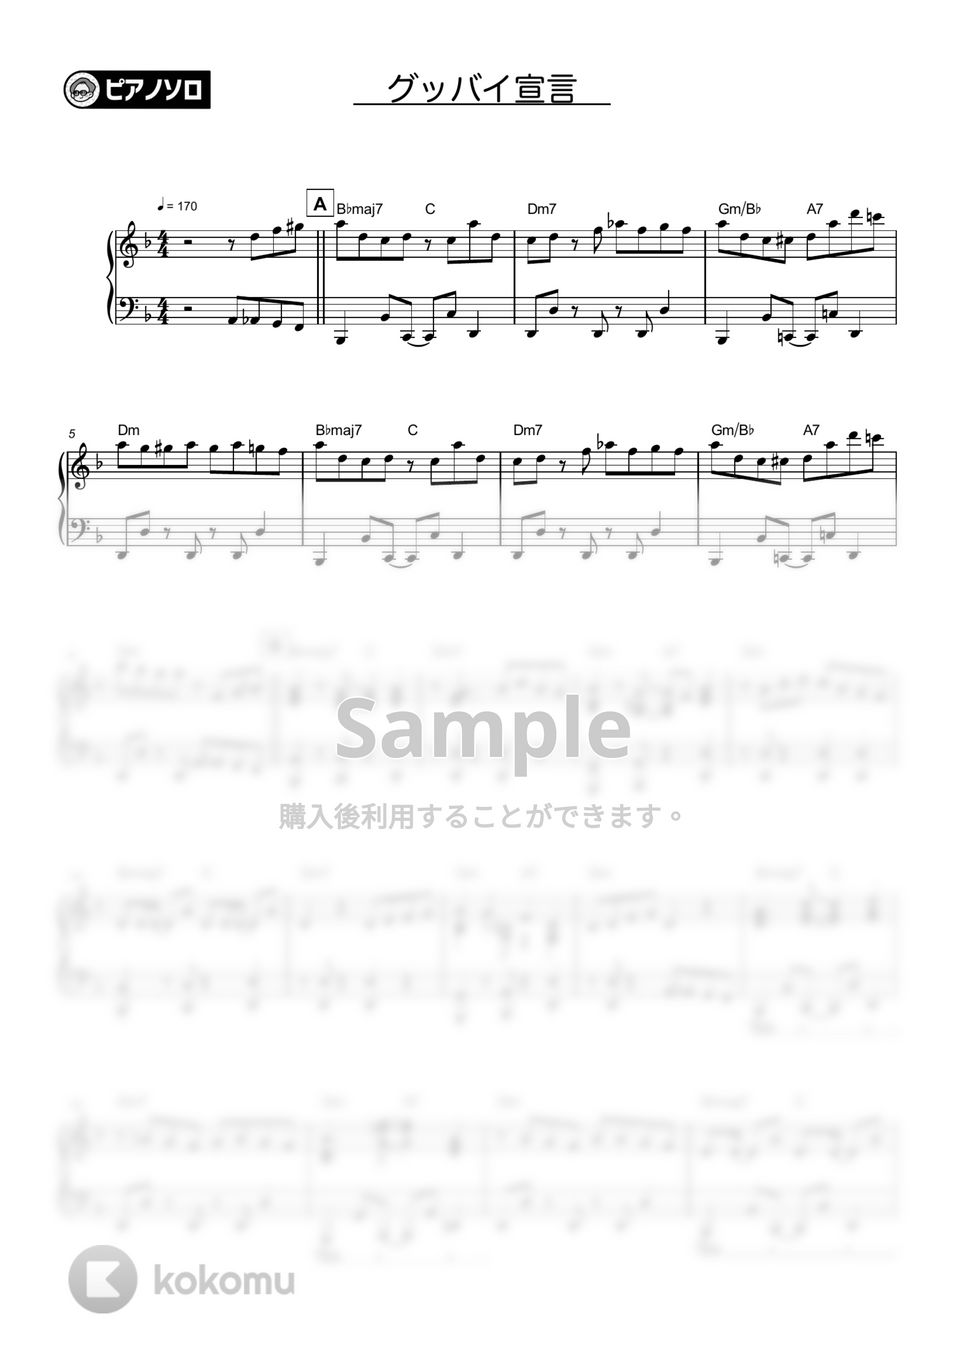 Chonozo - グッバイ宣言 by シータピアノ